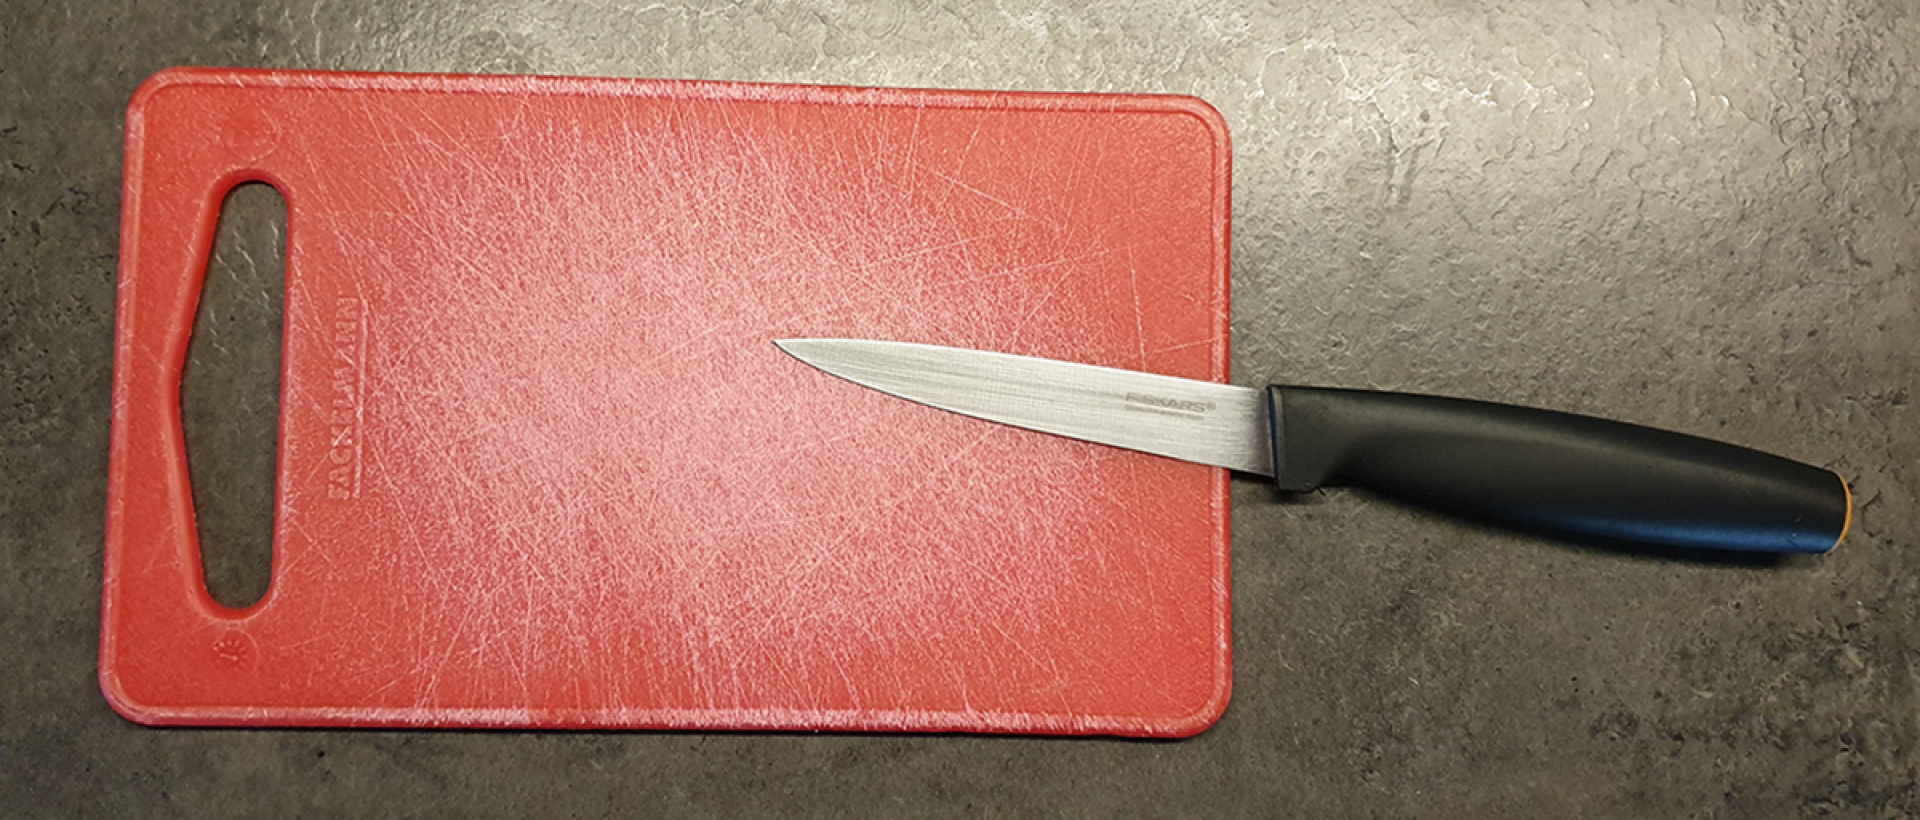 Ezeket a késeket használom minden nap a konyhámban